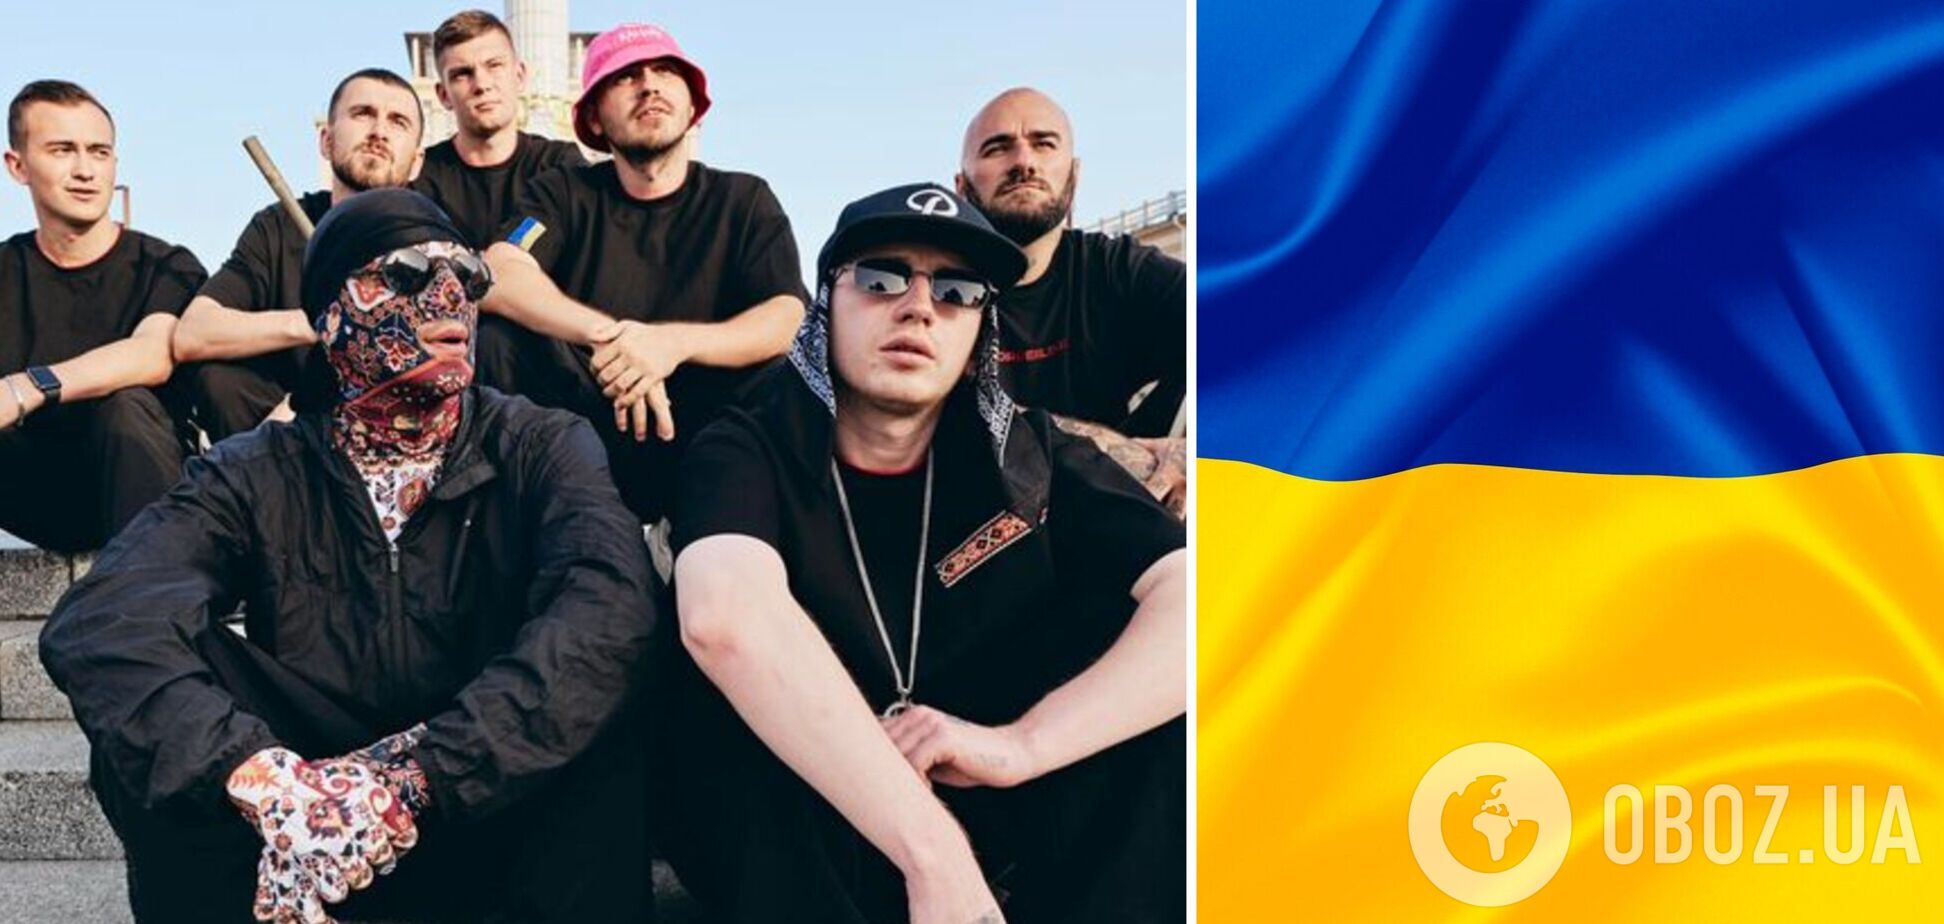 Украинцы за сутки собрали 5 млн грн на реабилитацию защитников Мариуполя: сбор объявил Kalush Orchestra